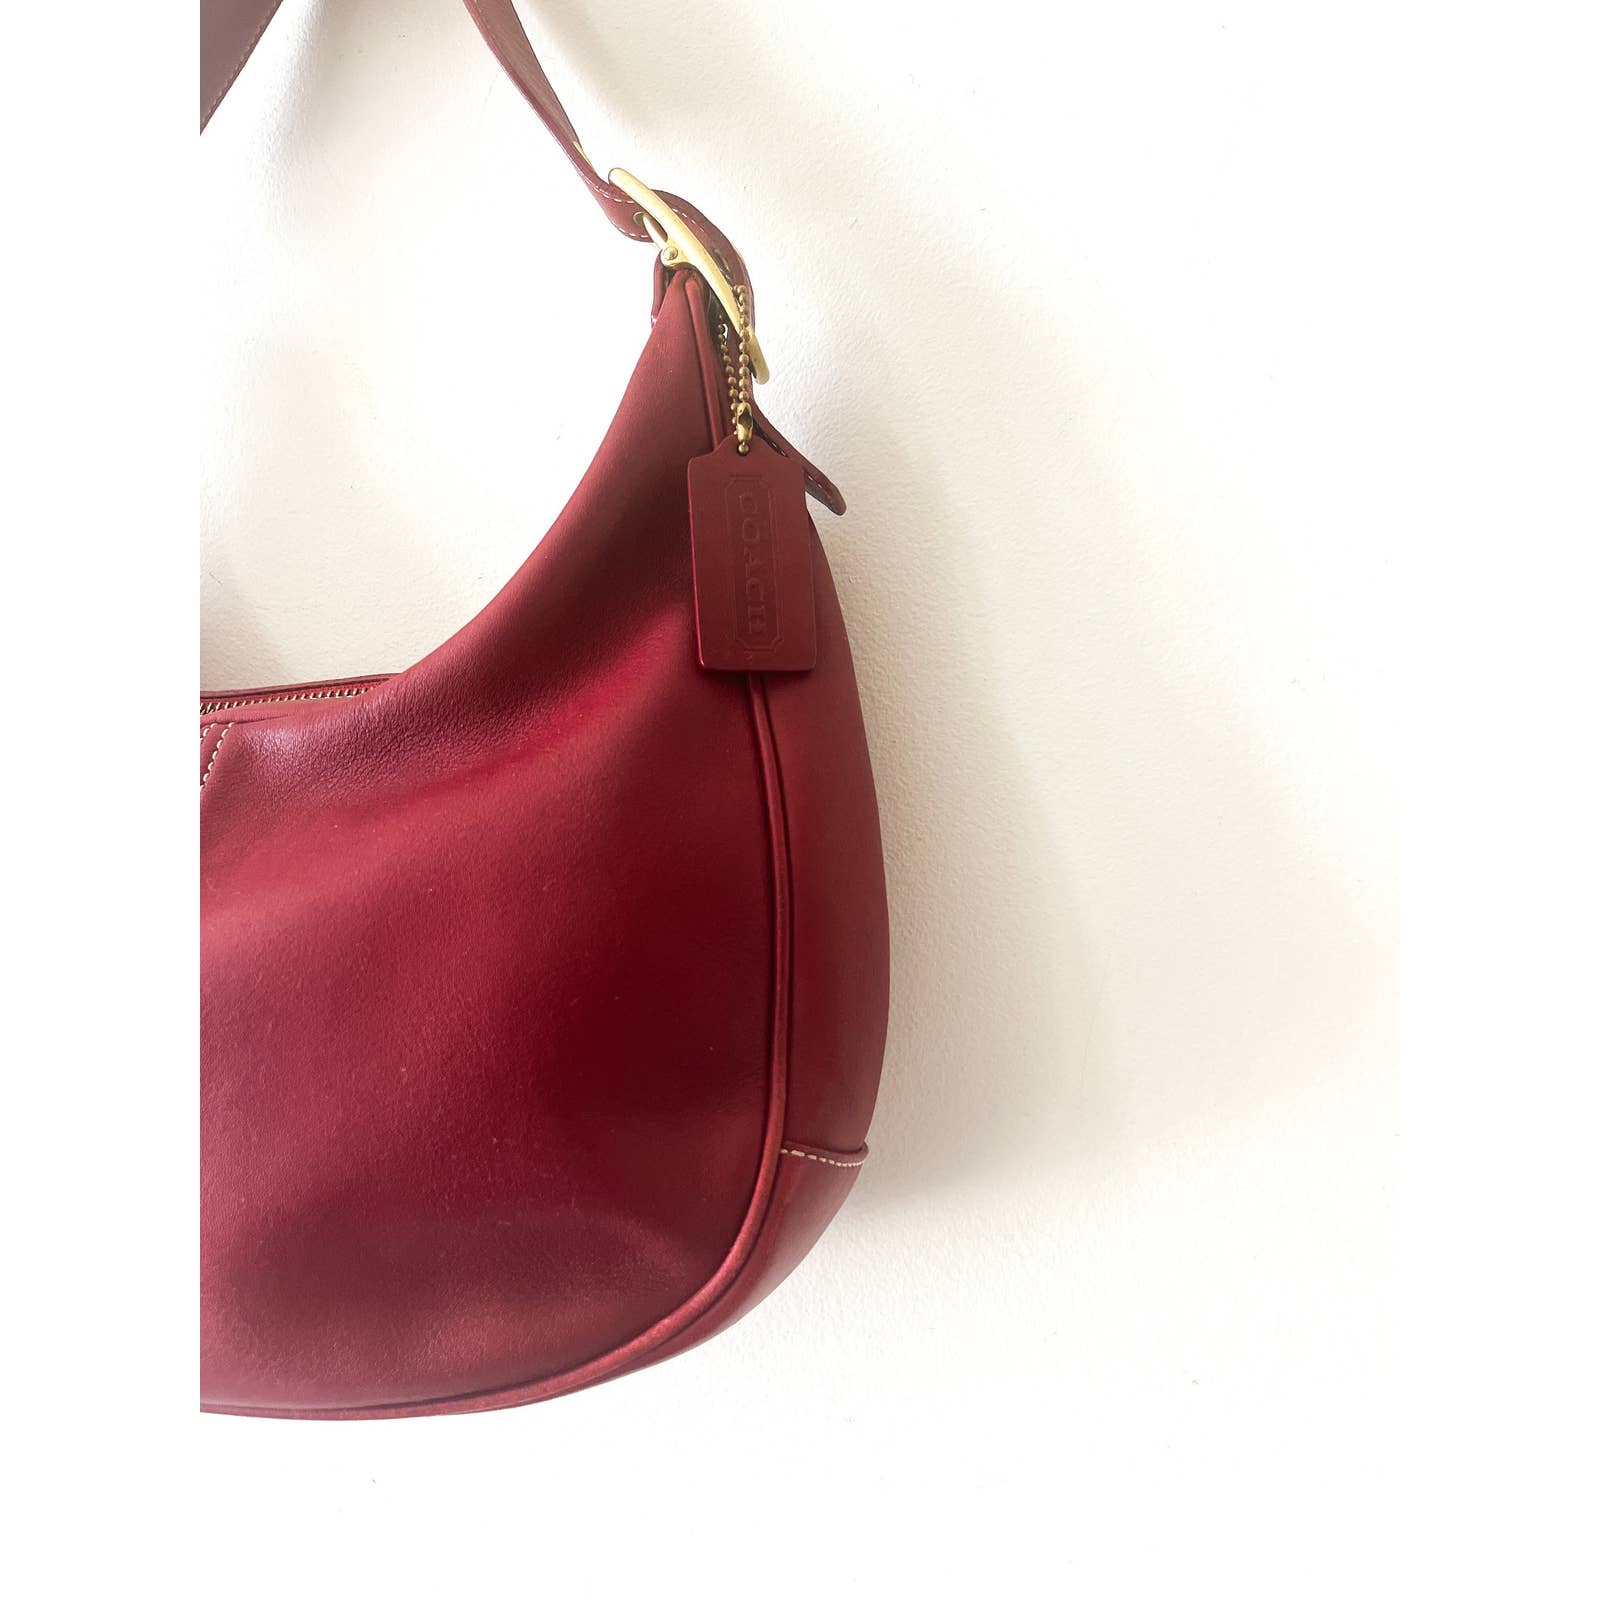 Coach red suede handbag purse 26415